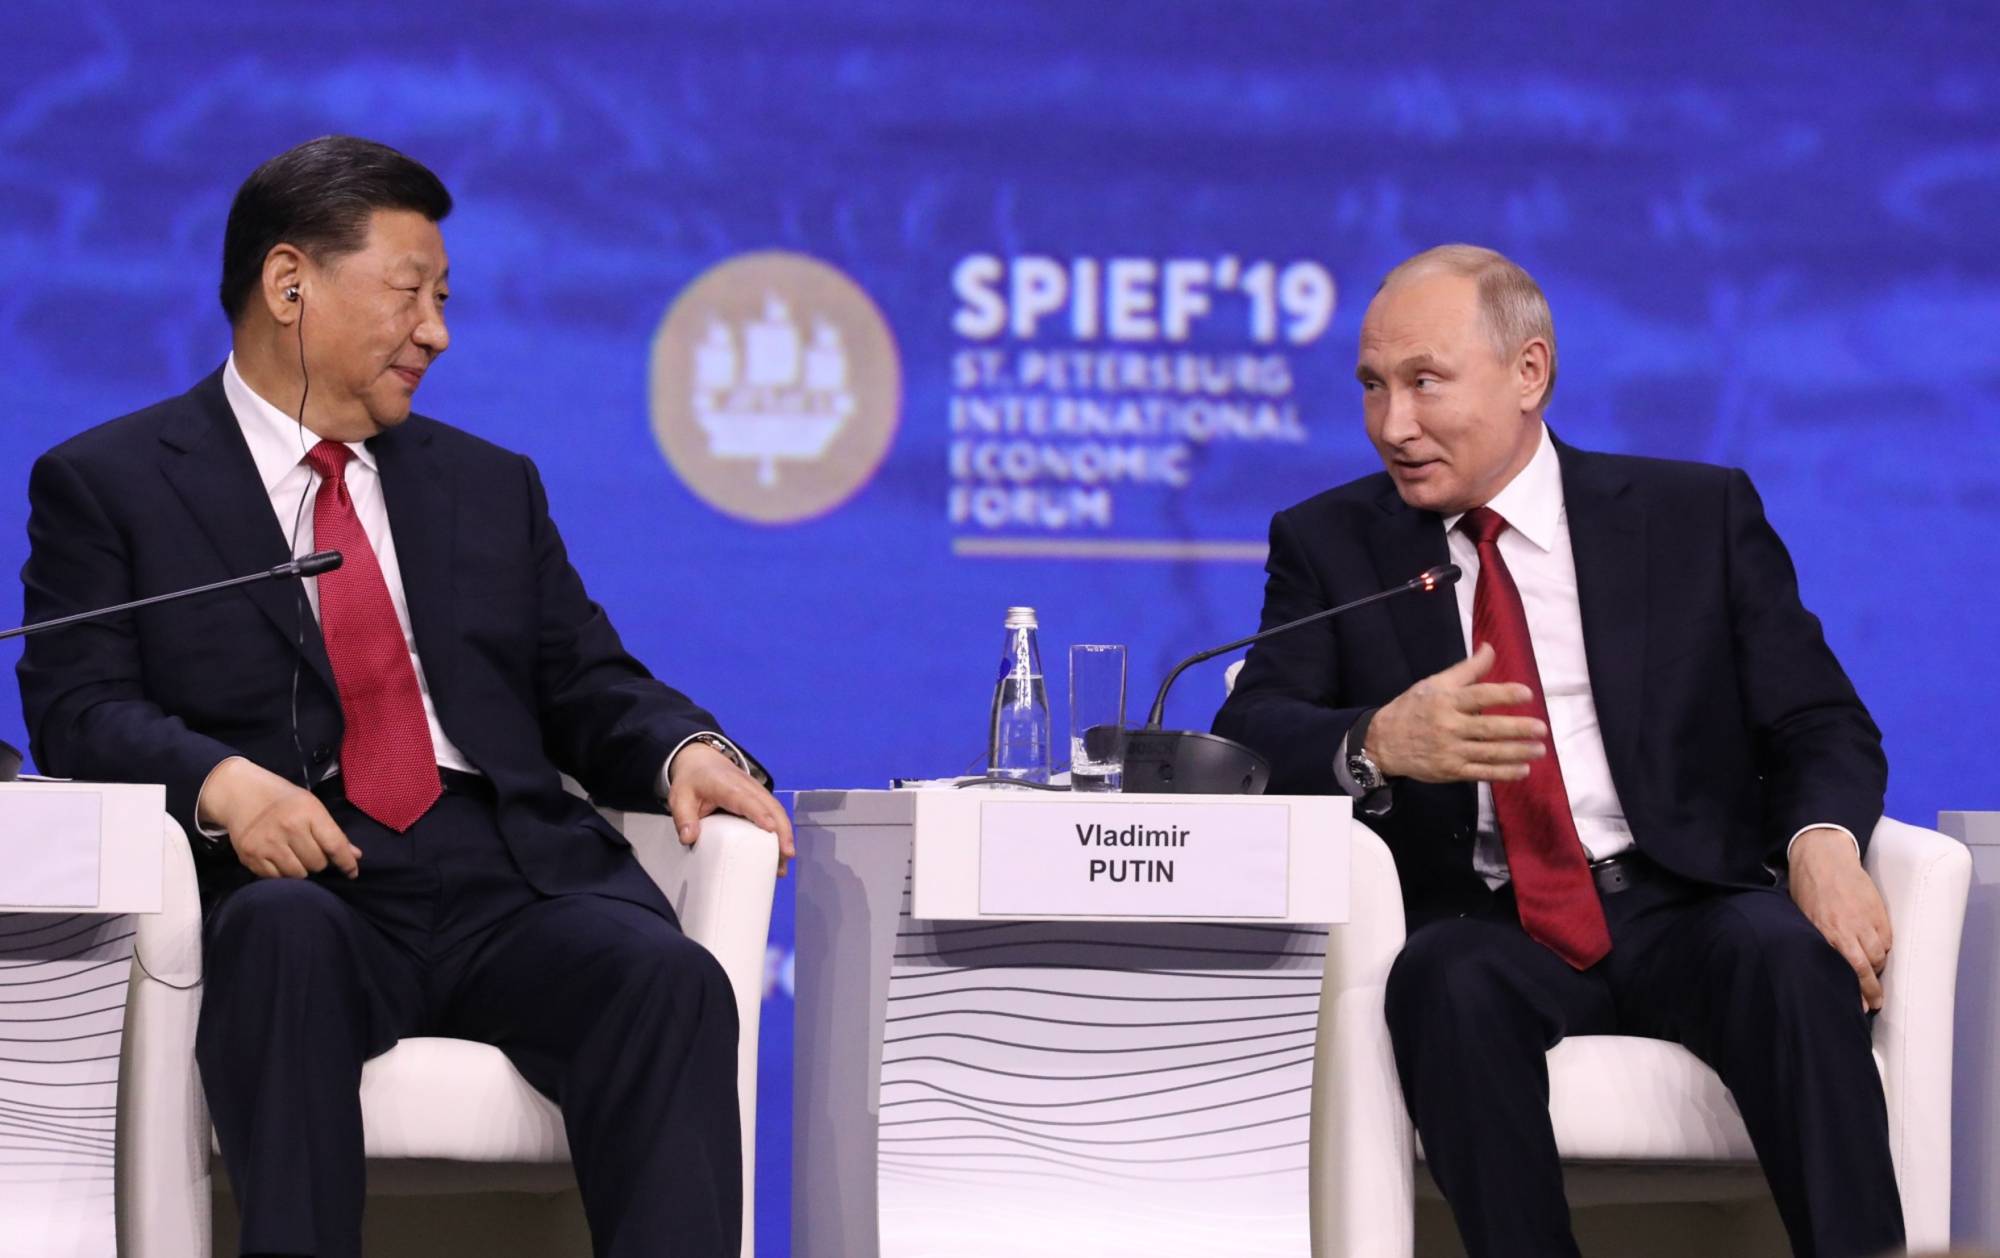 Владимир Путин сидит рядом с Си Цзиньпином во время Петербургского международного экономического форума (ПМЭФ) в Санкт-Петербурге в июне 2019 года. |  Блумберг